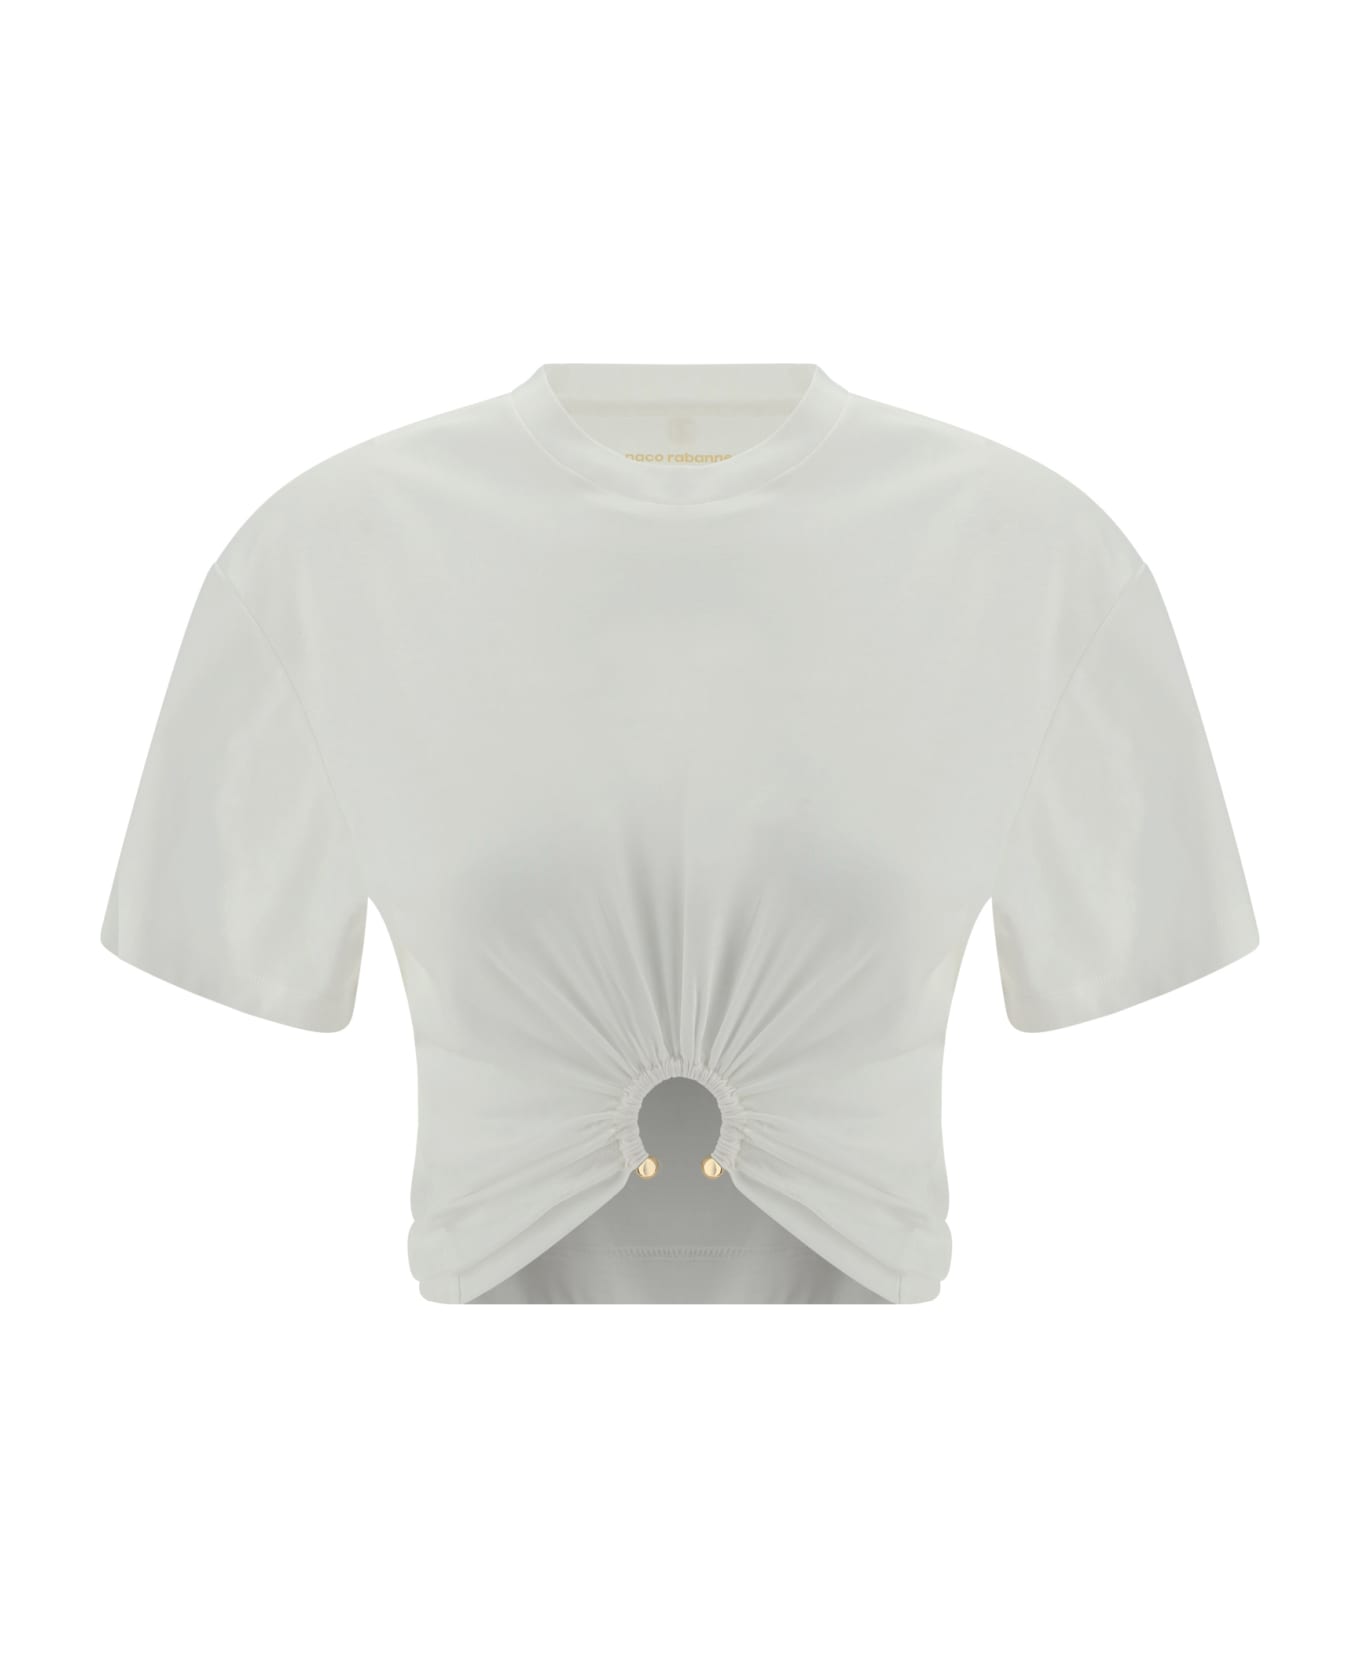 Paco Rabanne T-shirt - Beige Tシャツ